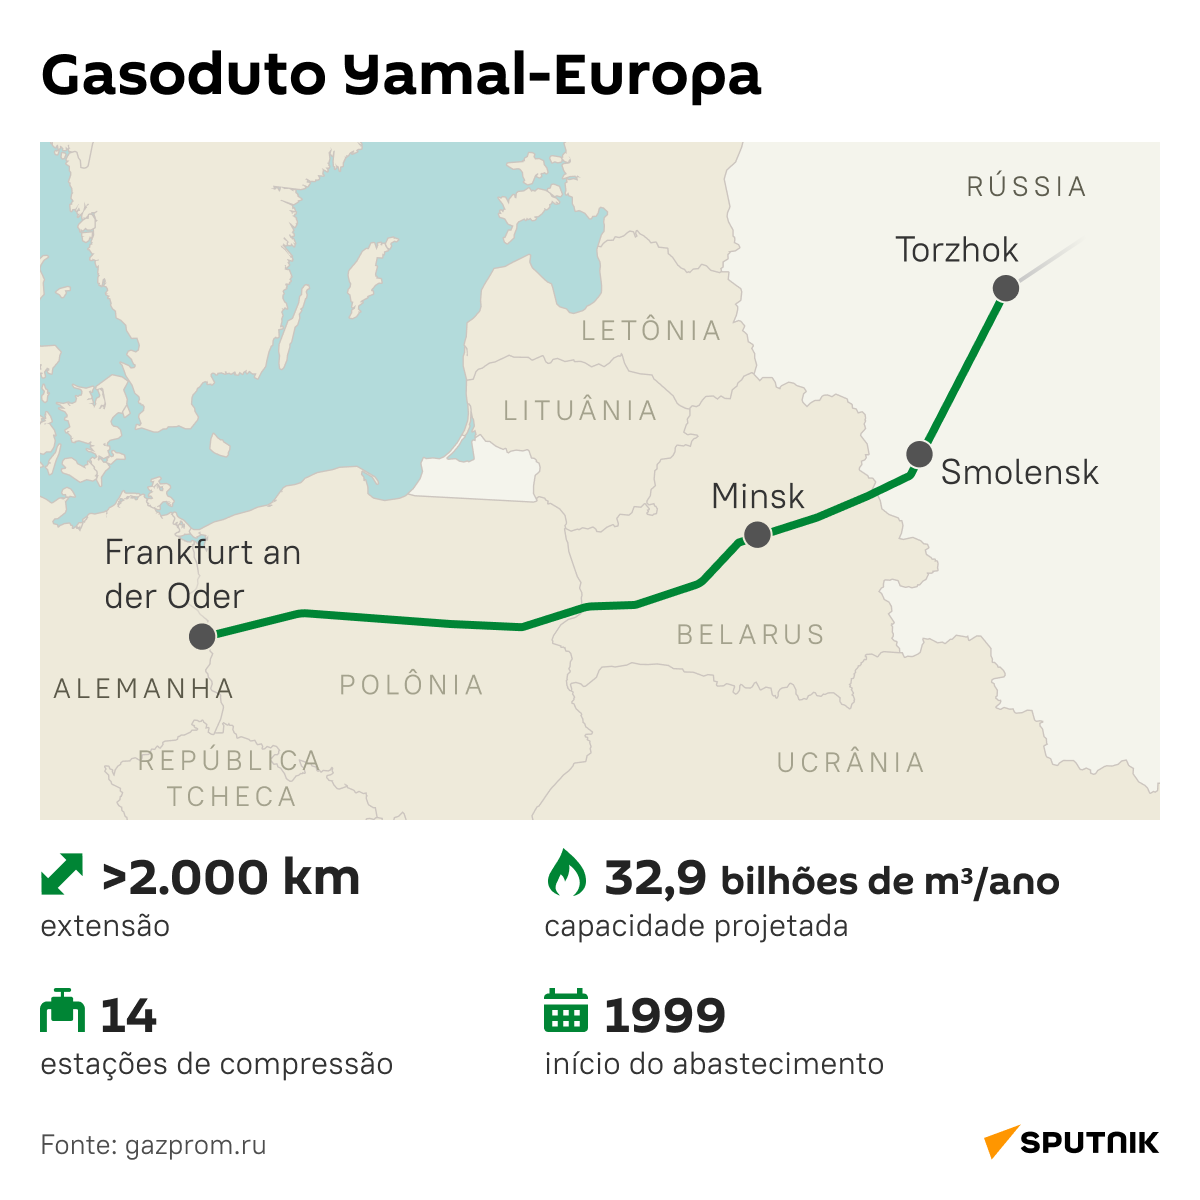 Gasoduto Yamal-Europa - Sputnik Brasil